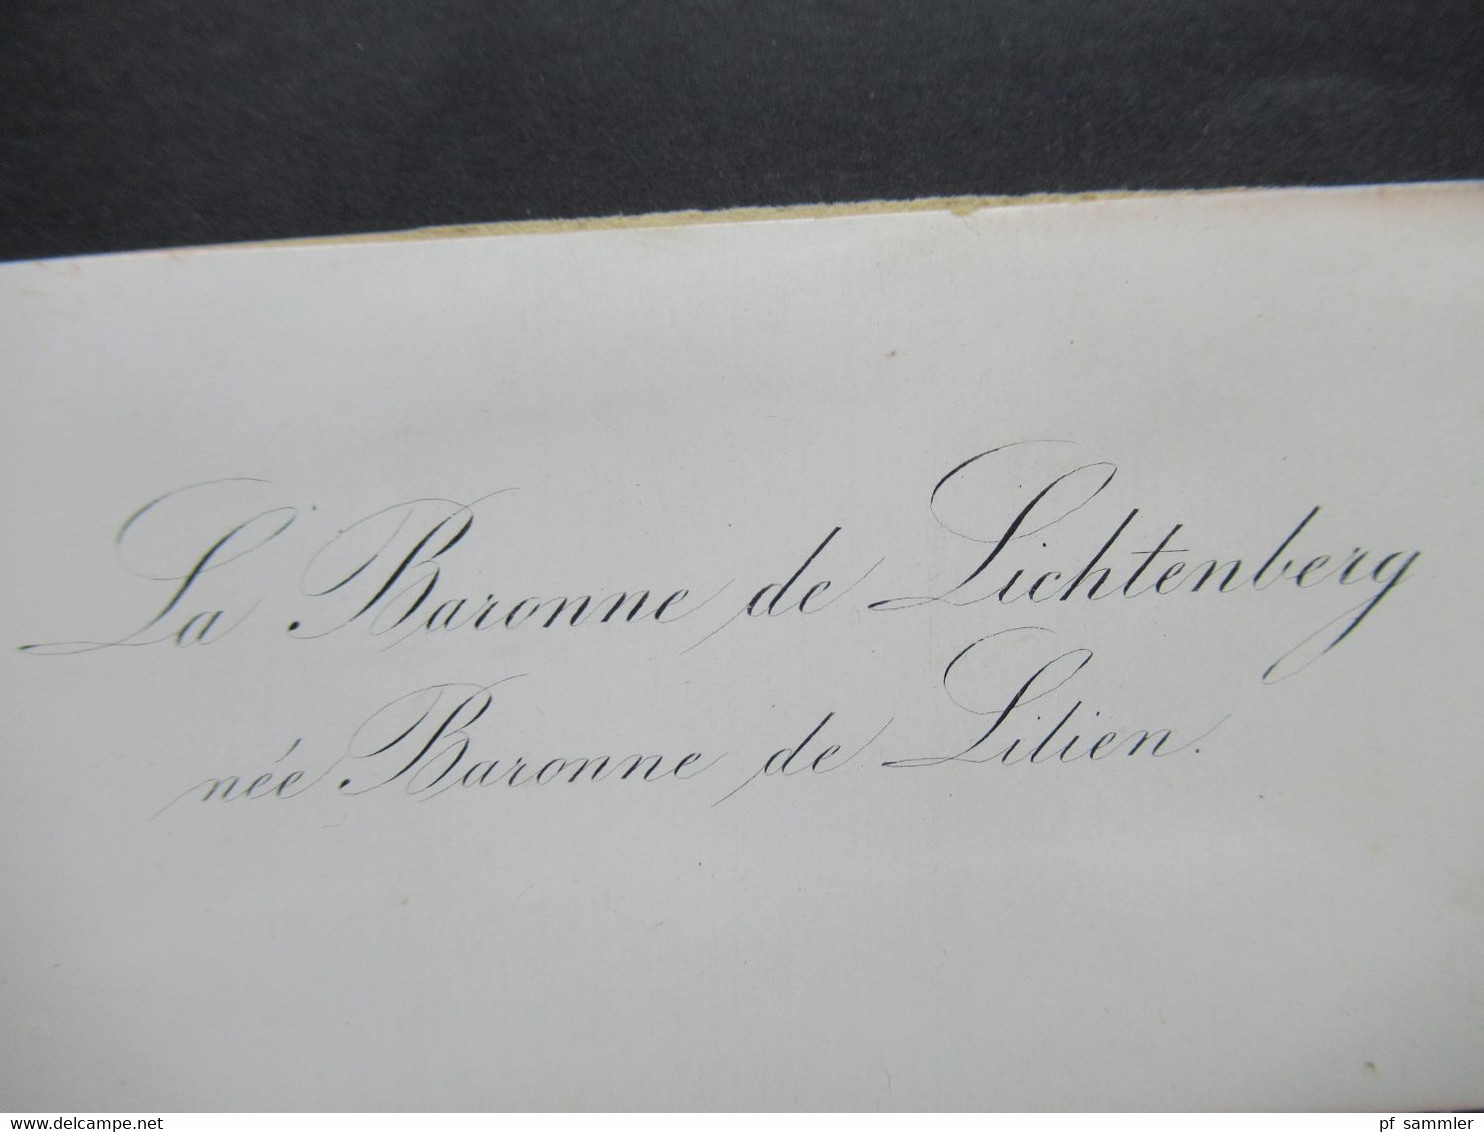 Levante Alte Visitenkarten um 1860 Le Baron de Lichtenberg Consul de Prusse a Ragusa / La Baronne Freifrau von Lilien